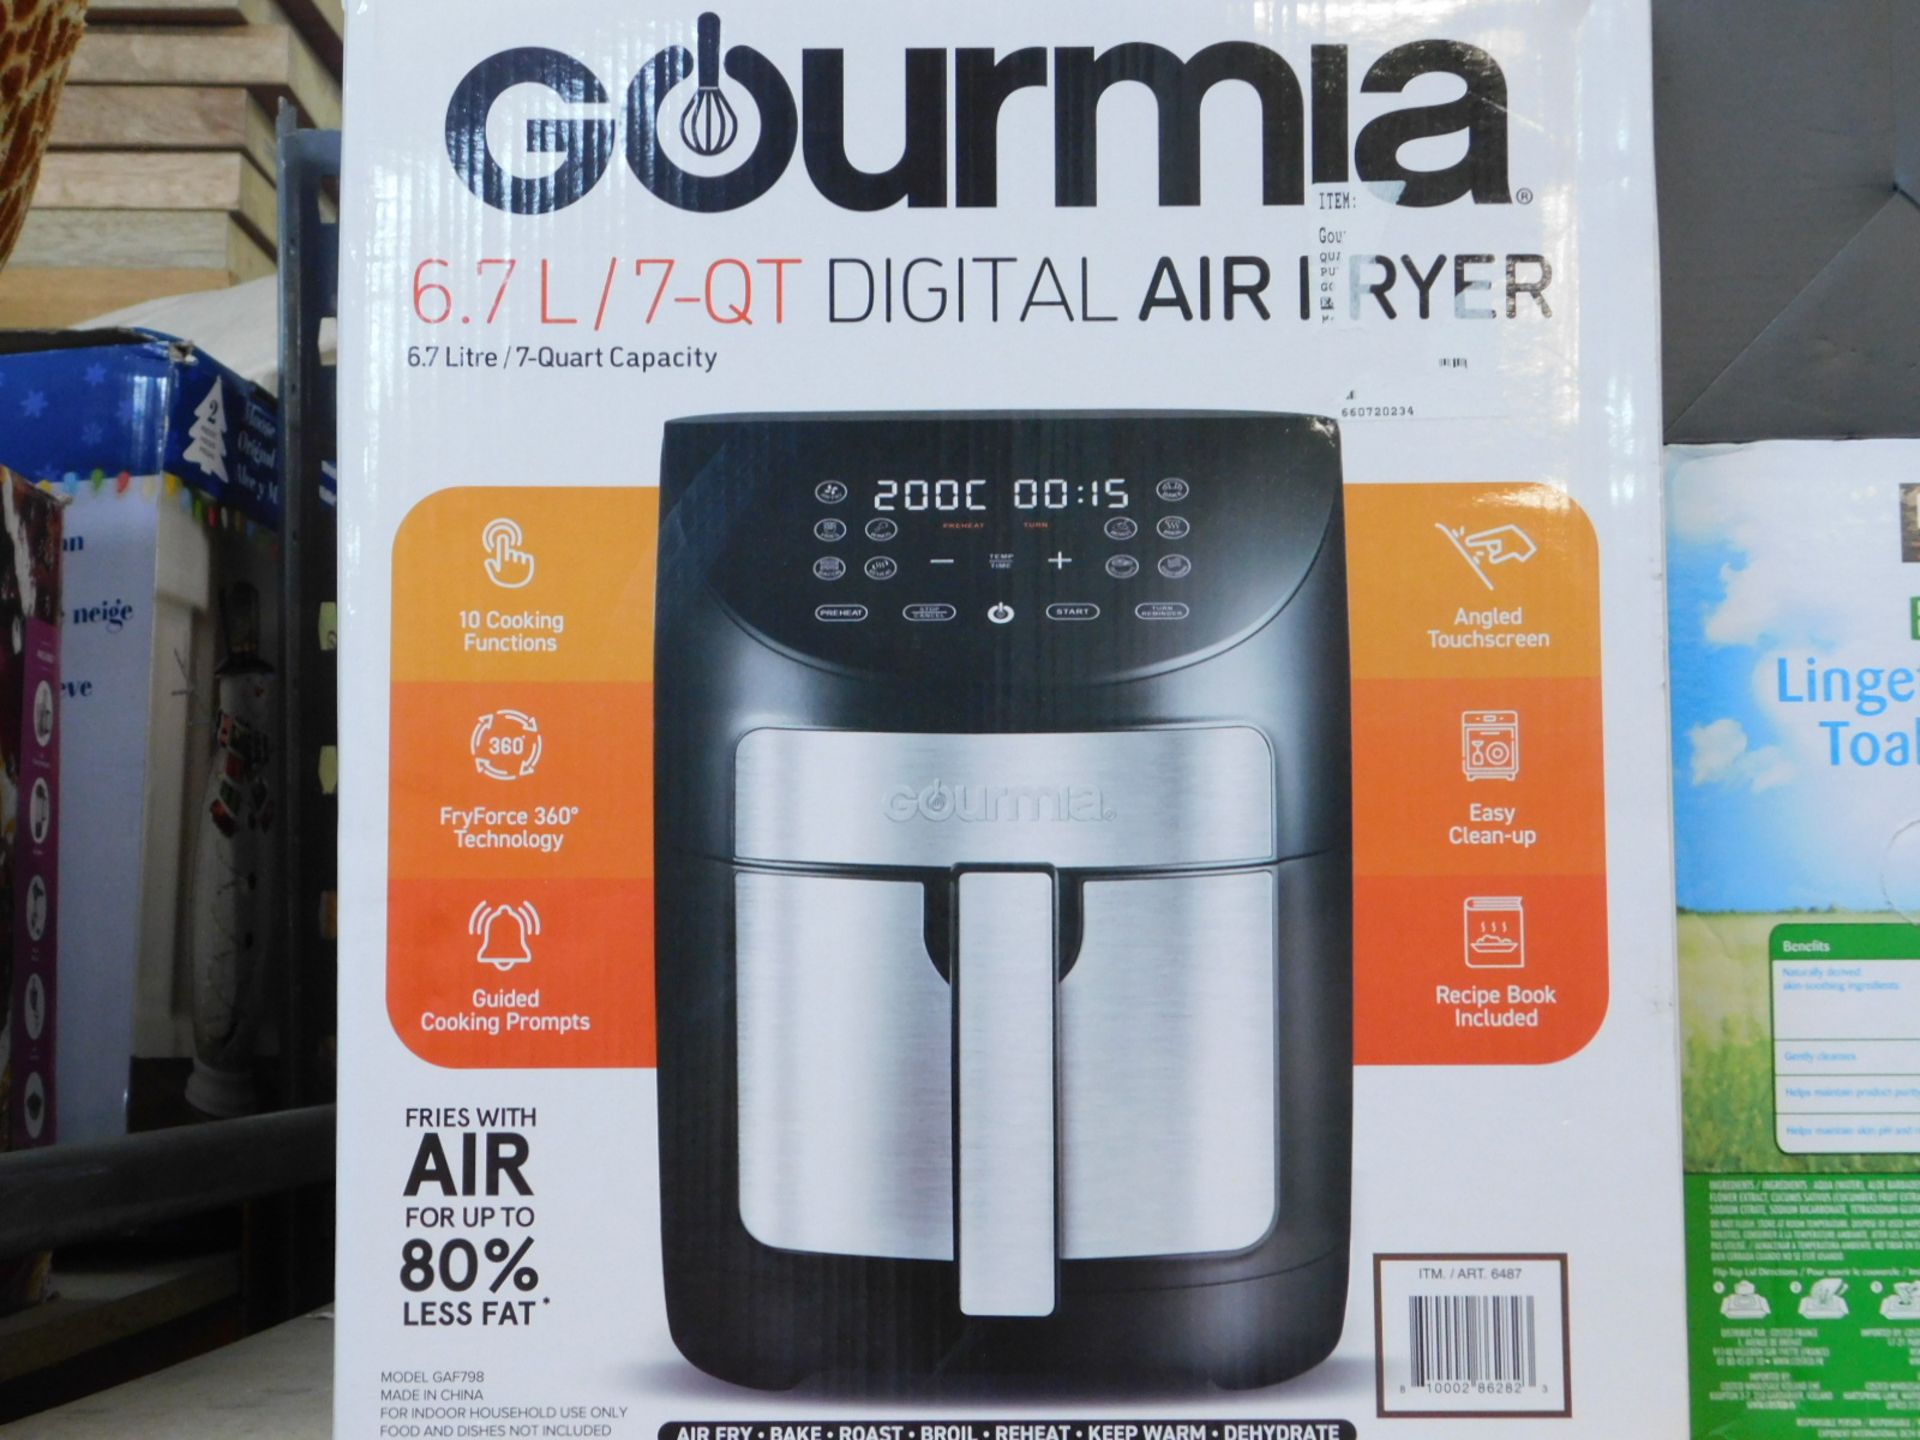 1 BOXED GOURMIA 6.7L DIGITAL AIR FRYER RRP Â£59